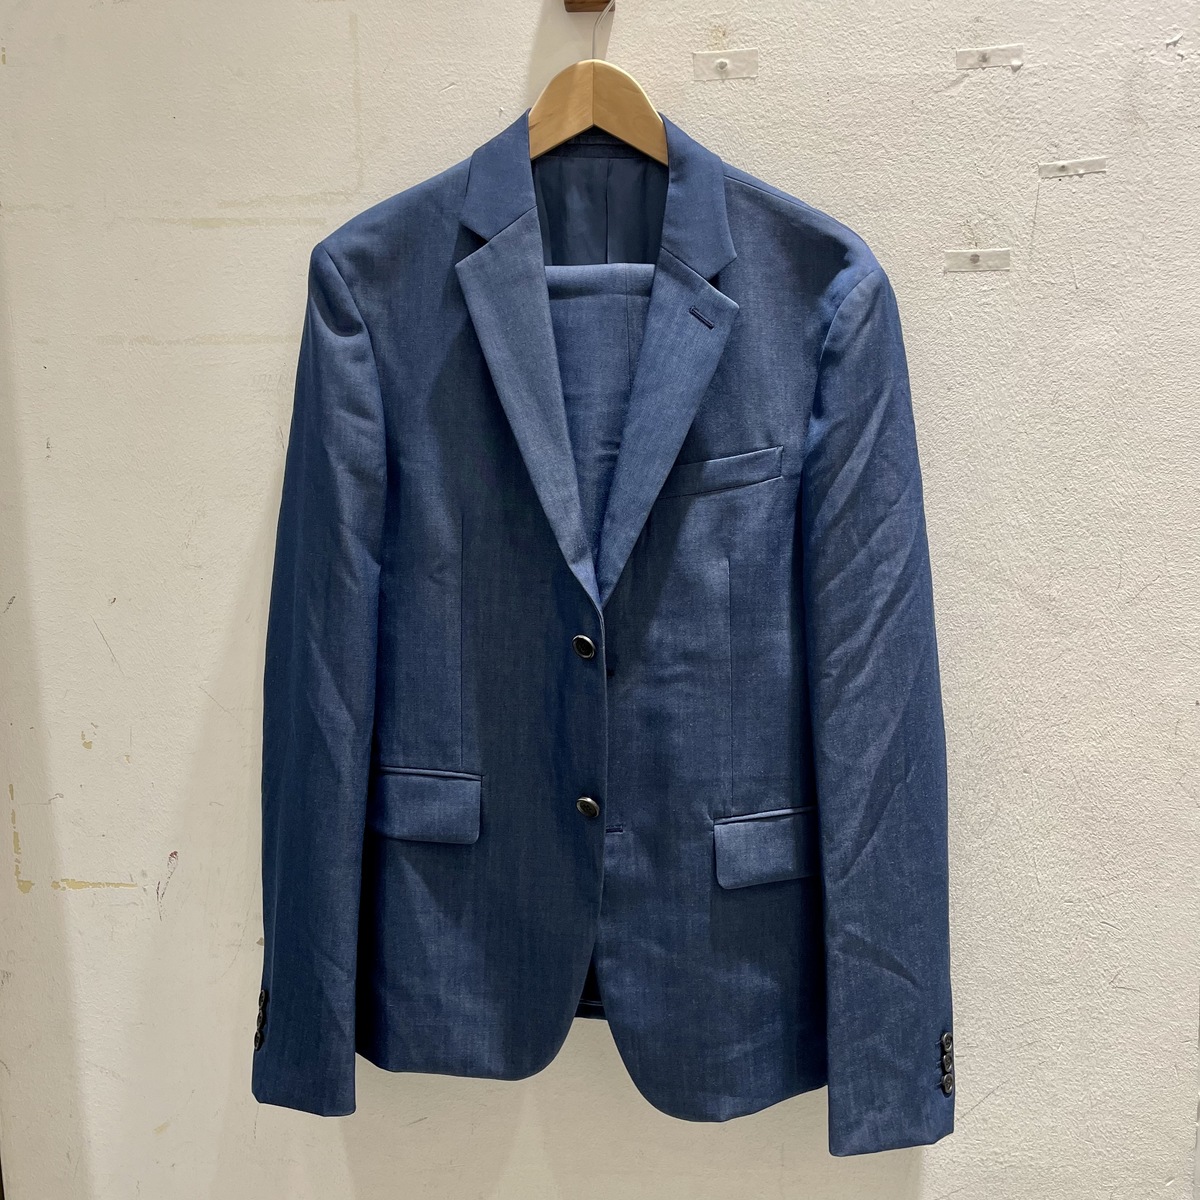 プラダのトラベルライン ブルー 2019年春夏 スーツ/セットアップの買取実績です。